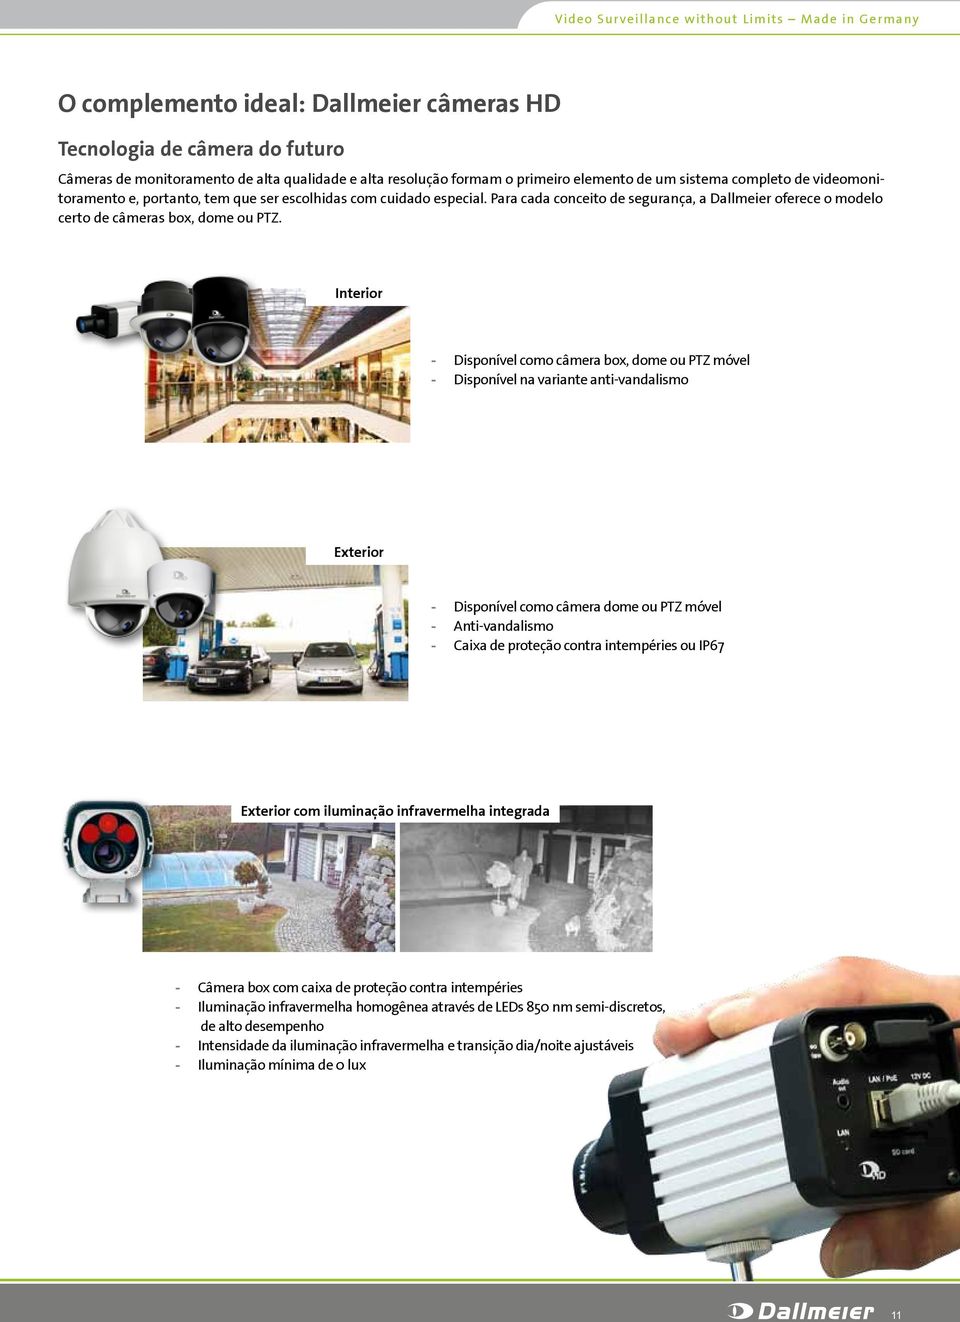 Para cada conceito de segurança, a Dallmeier oferece o modelo certo de câmeras box, dome ou PTZ.